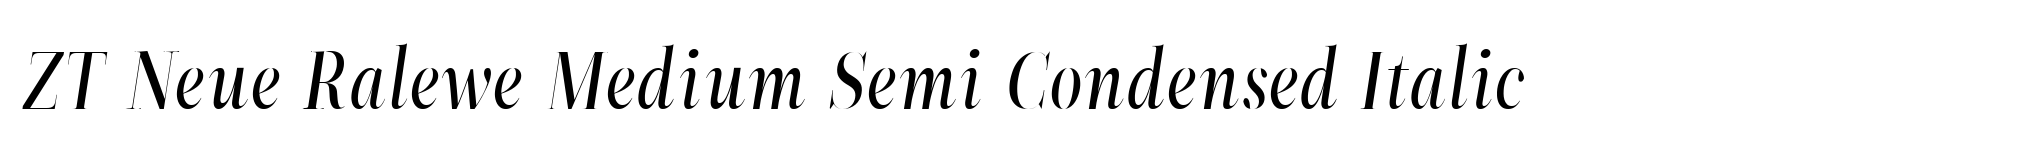 ZT Neue Ralewe Medium Semi Condensed Italic image